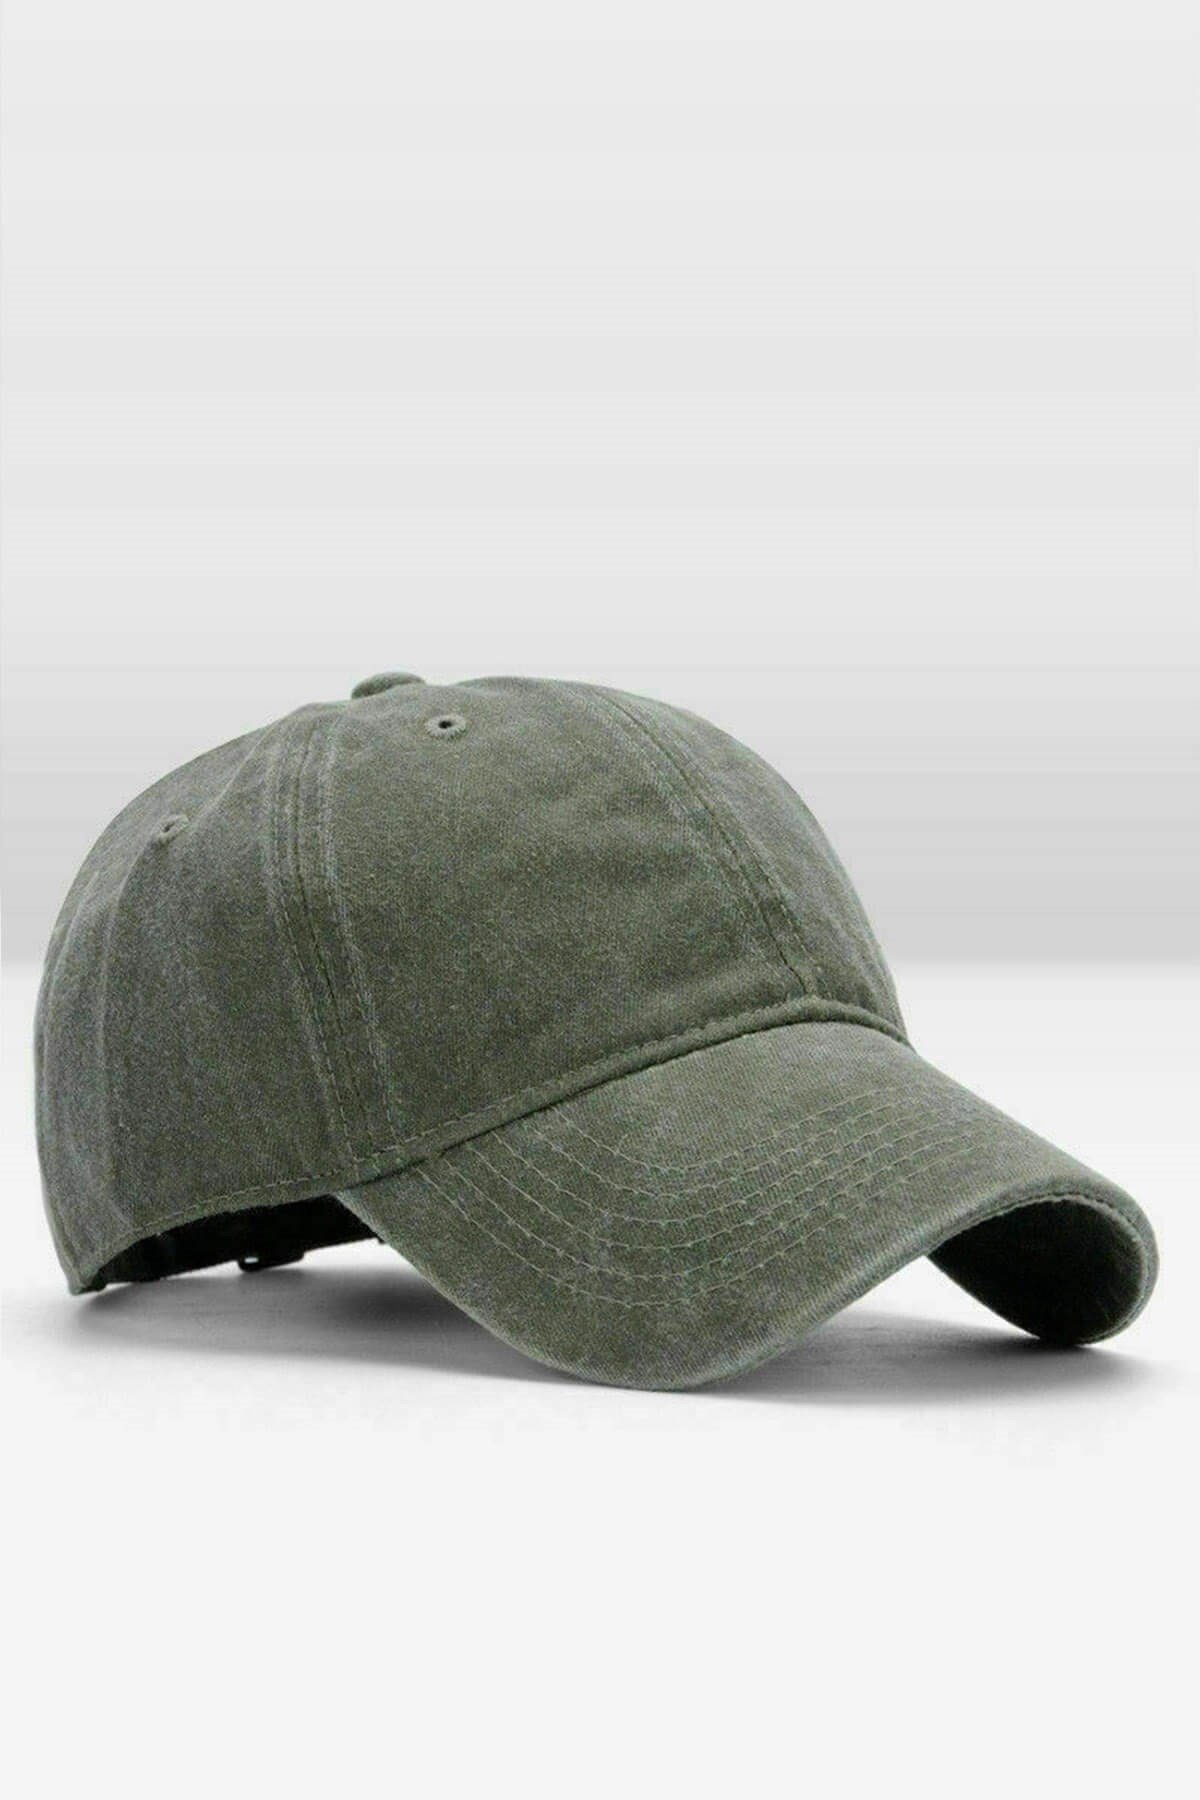 Külah Erkek Eskitme Şapka Yazlık Outdoor Kep Kasket-Yeşil KLH6895